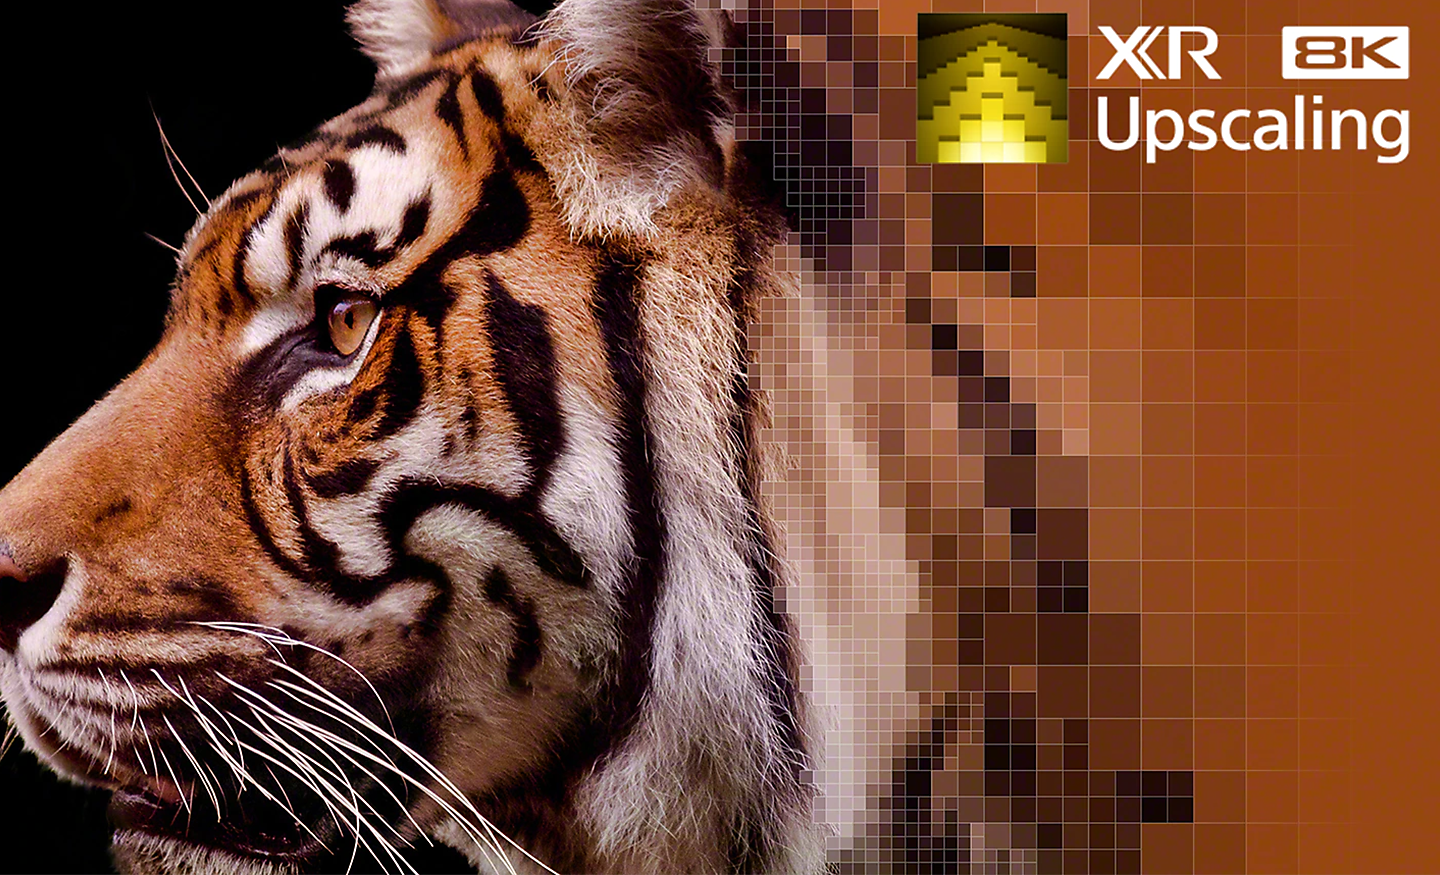 Nahaufnahme der Fellzeichnung eines Tigers zeigt den Effekt von XR 8K Upscaling